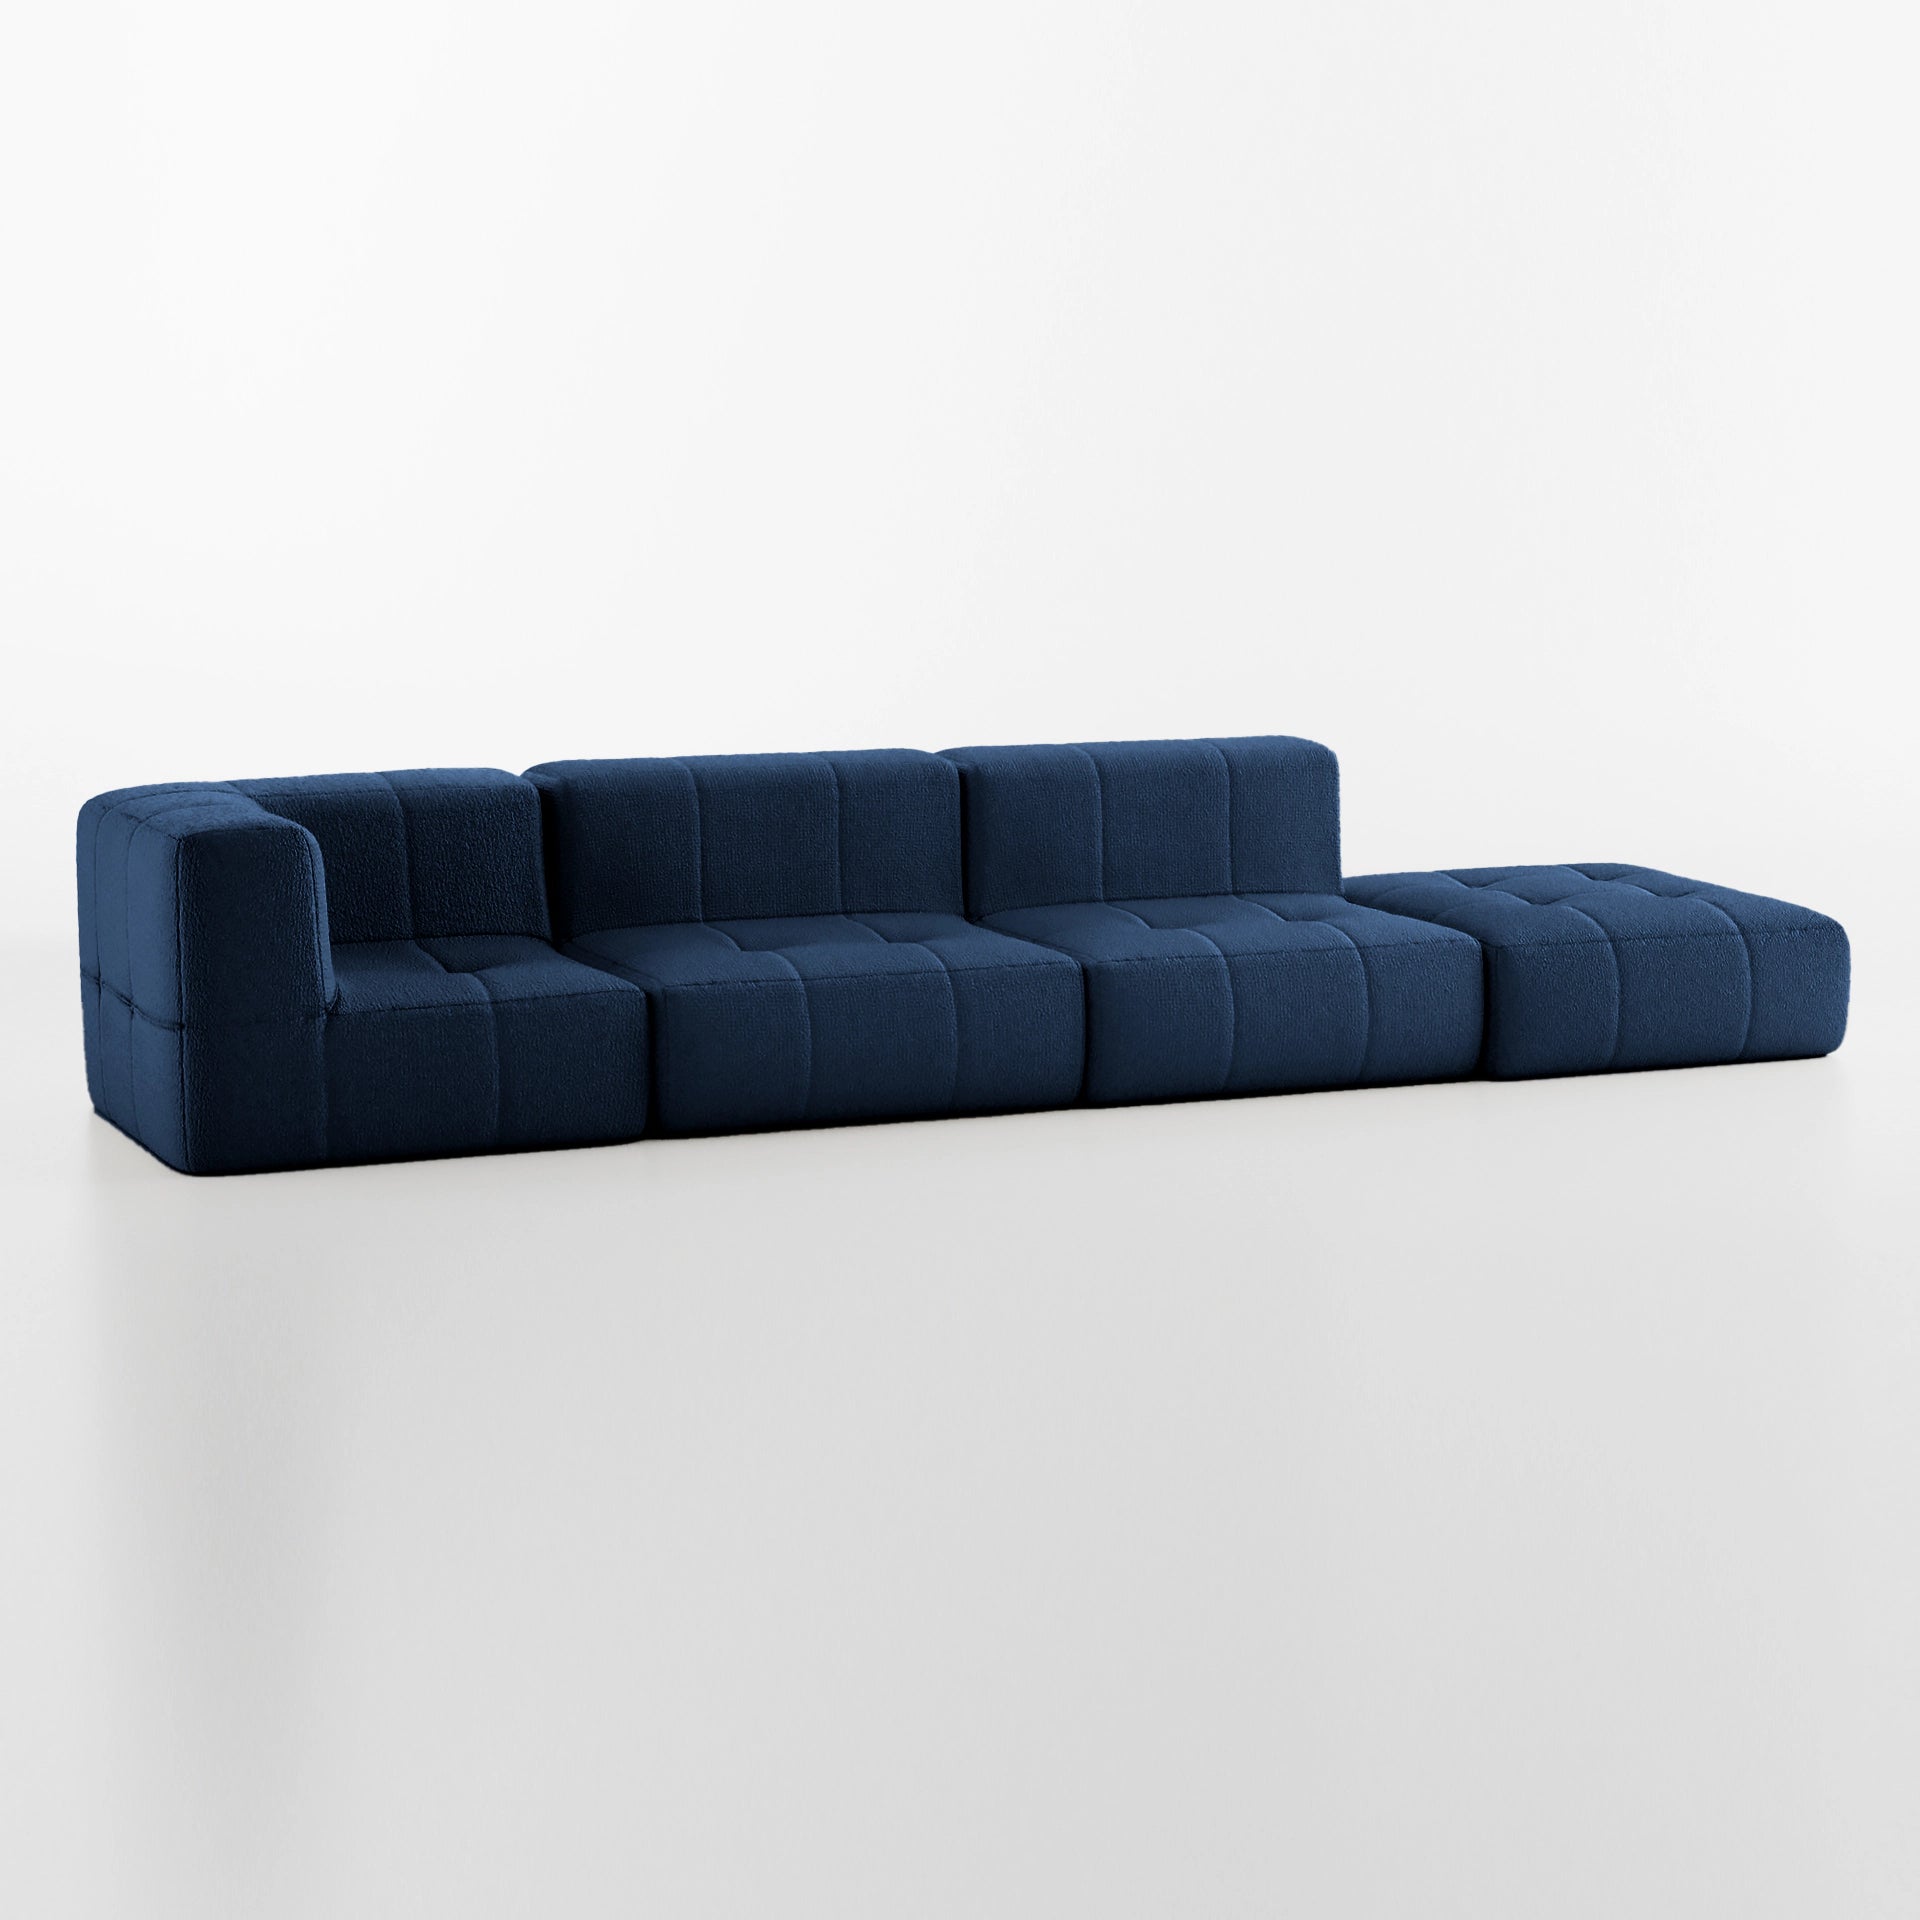 Sofá na Caixa modular 3 lugares em Boucle - 1 Braço com Chaise - Azul